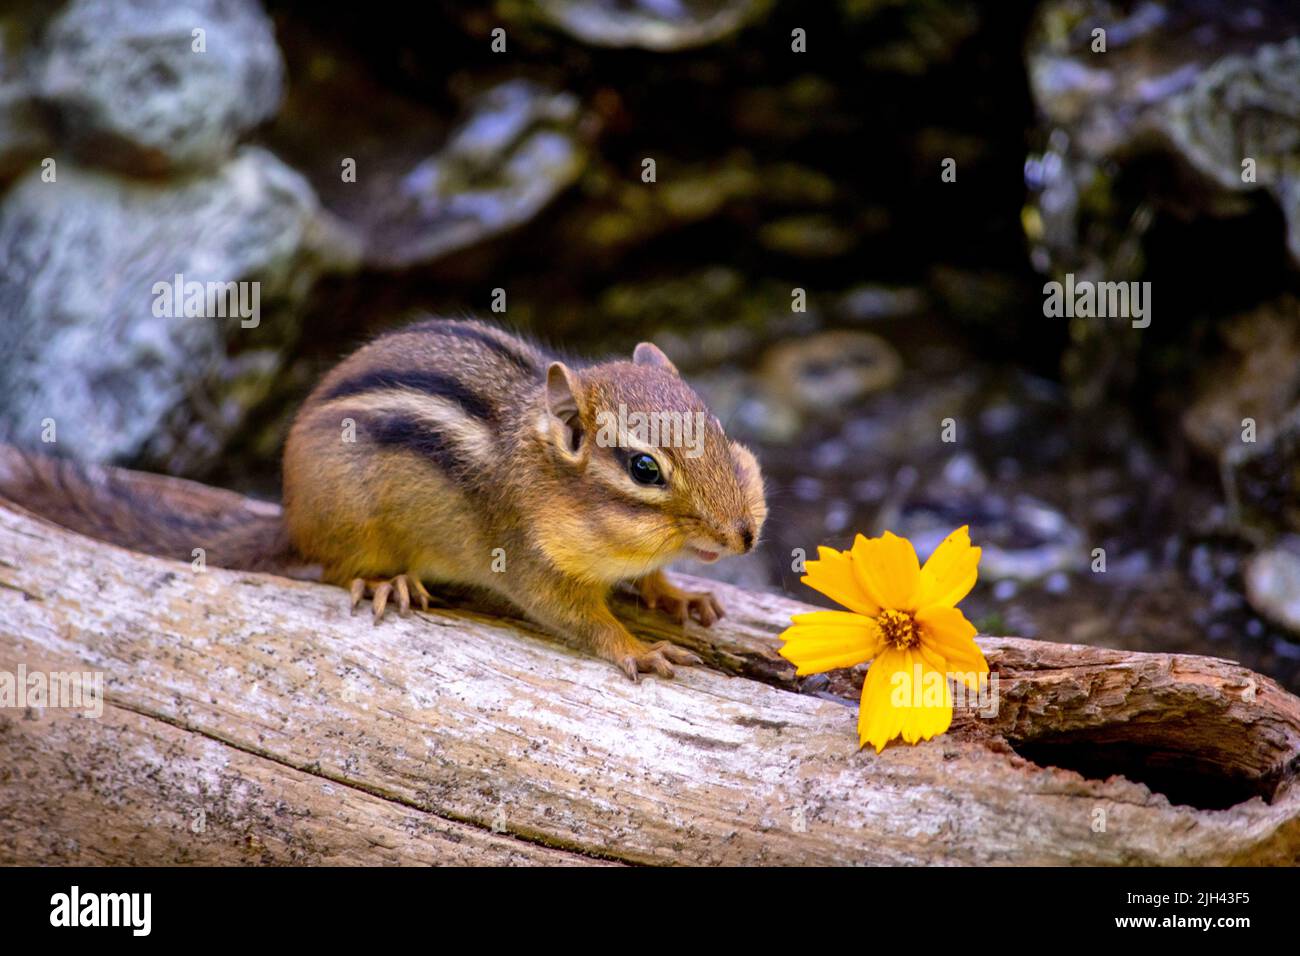 petit chipmunk sur une bûche avec une minuscule fleur jaune Banque D'Images